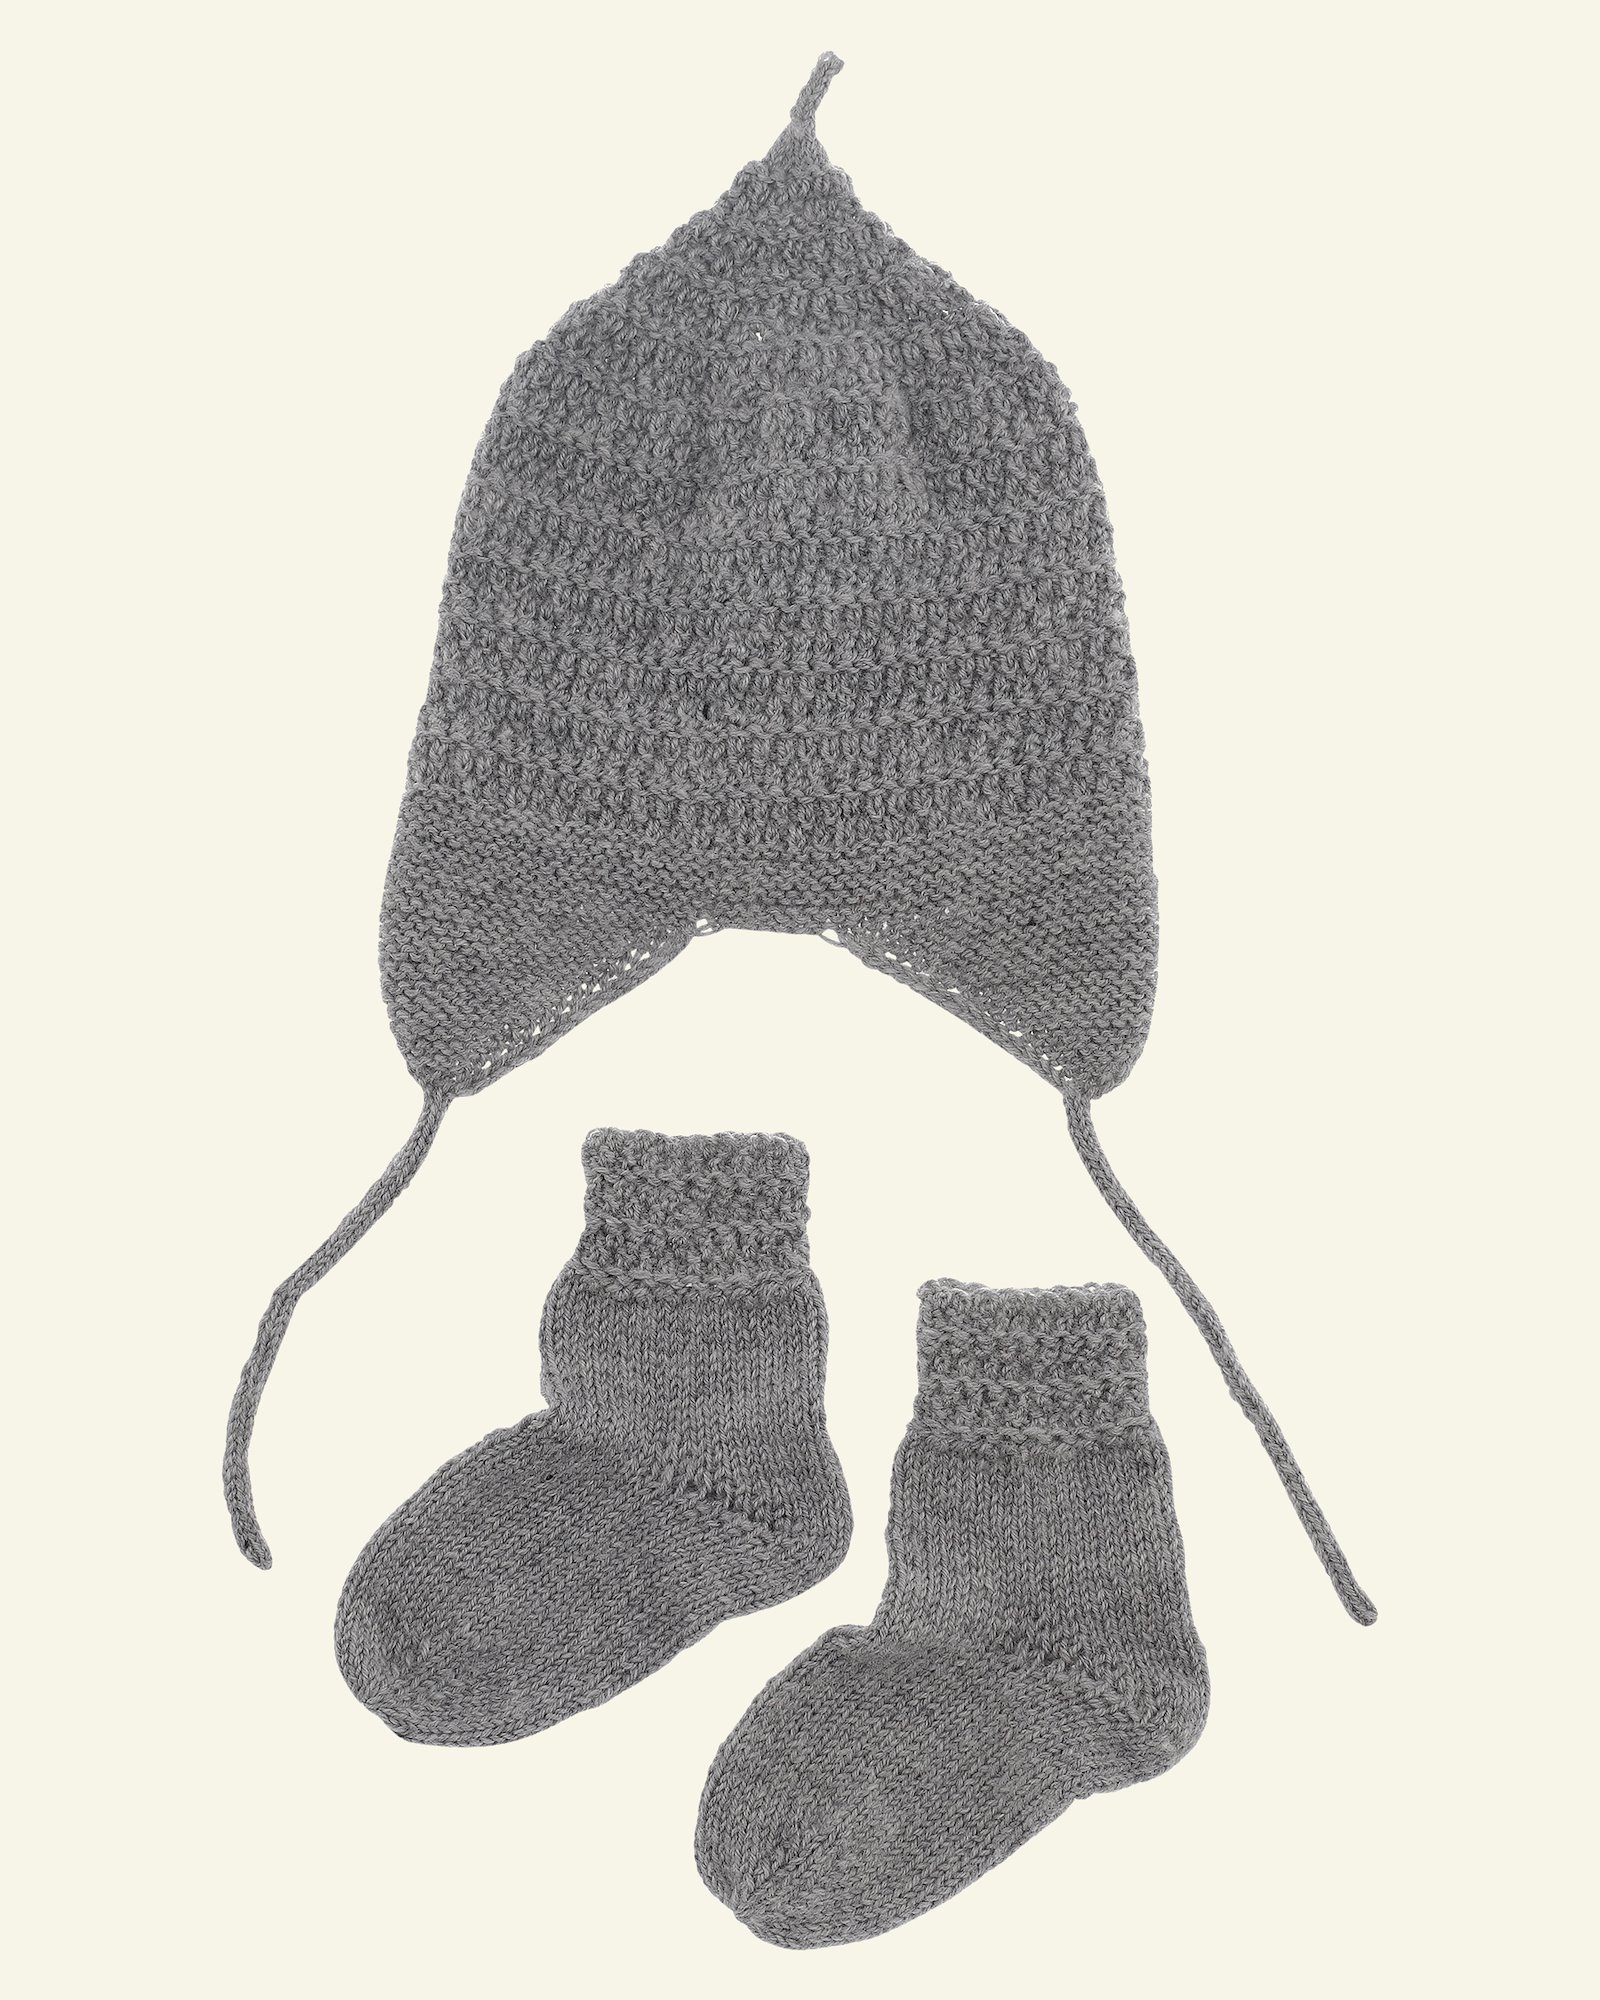 FRAYA strikkeopskrift – Oh so snug baby hat and socks - Delicate FRAYA3045_image.png